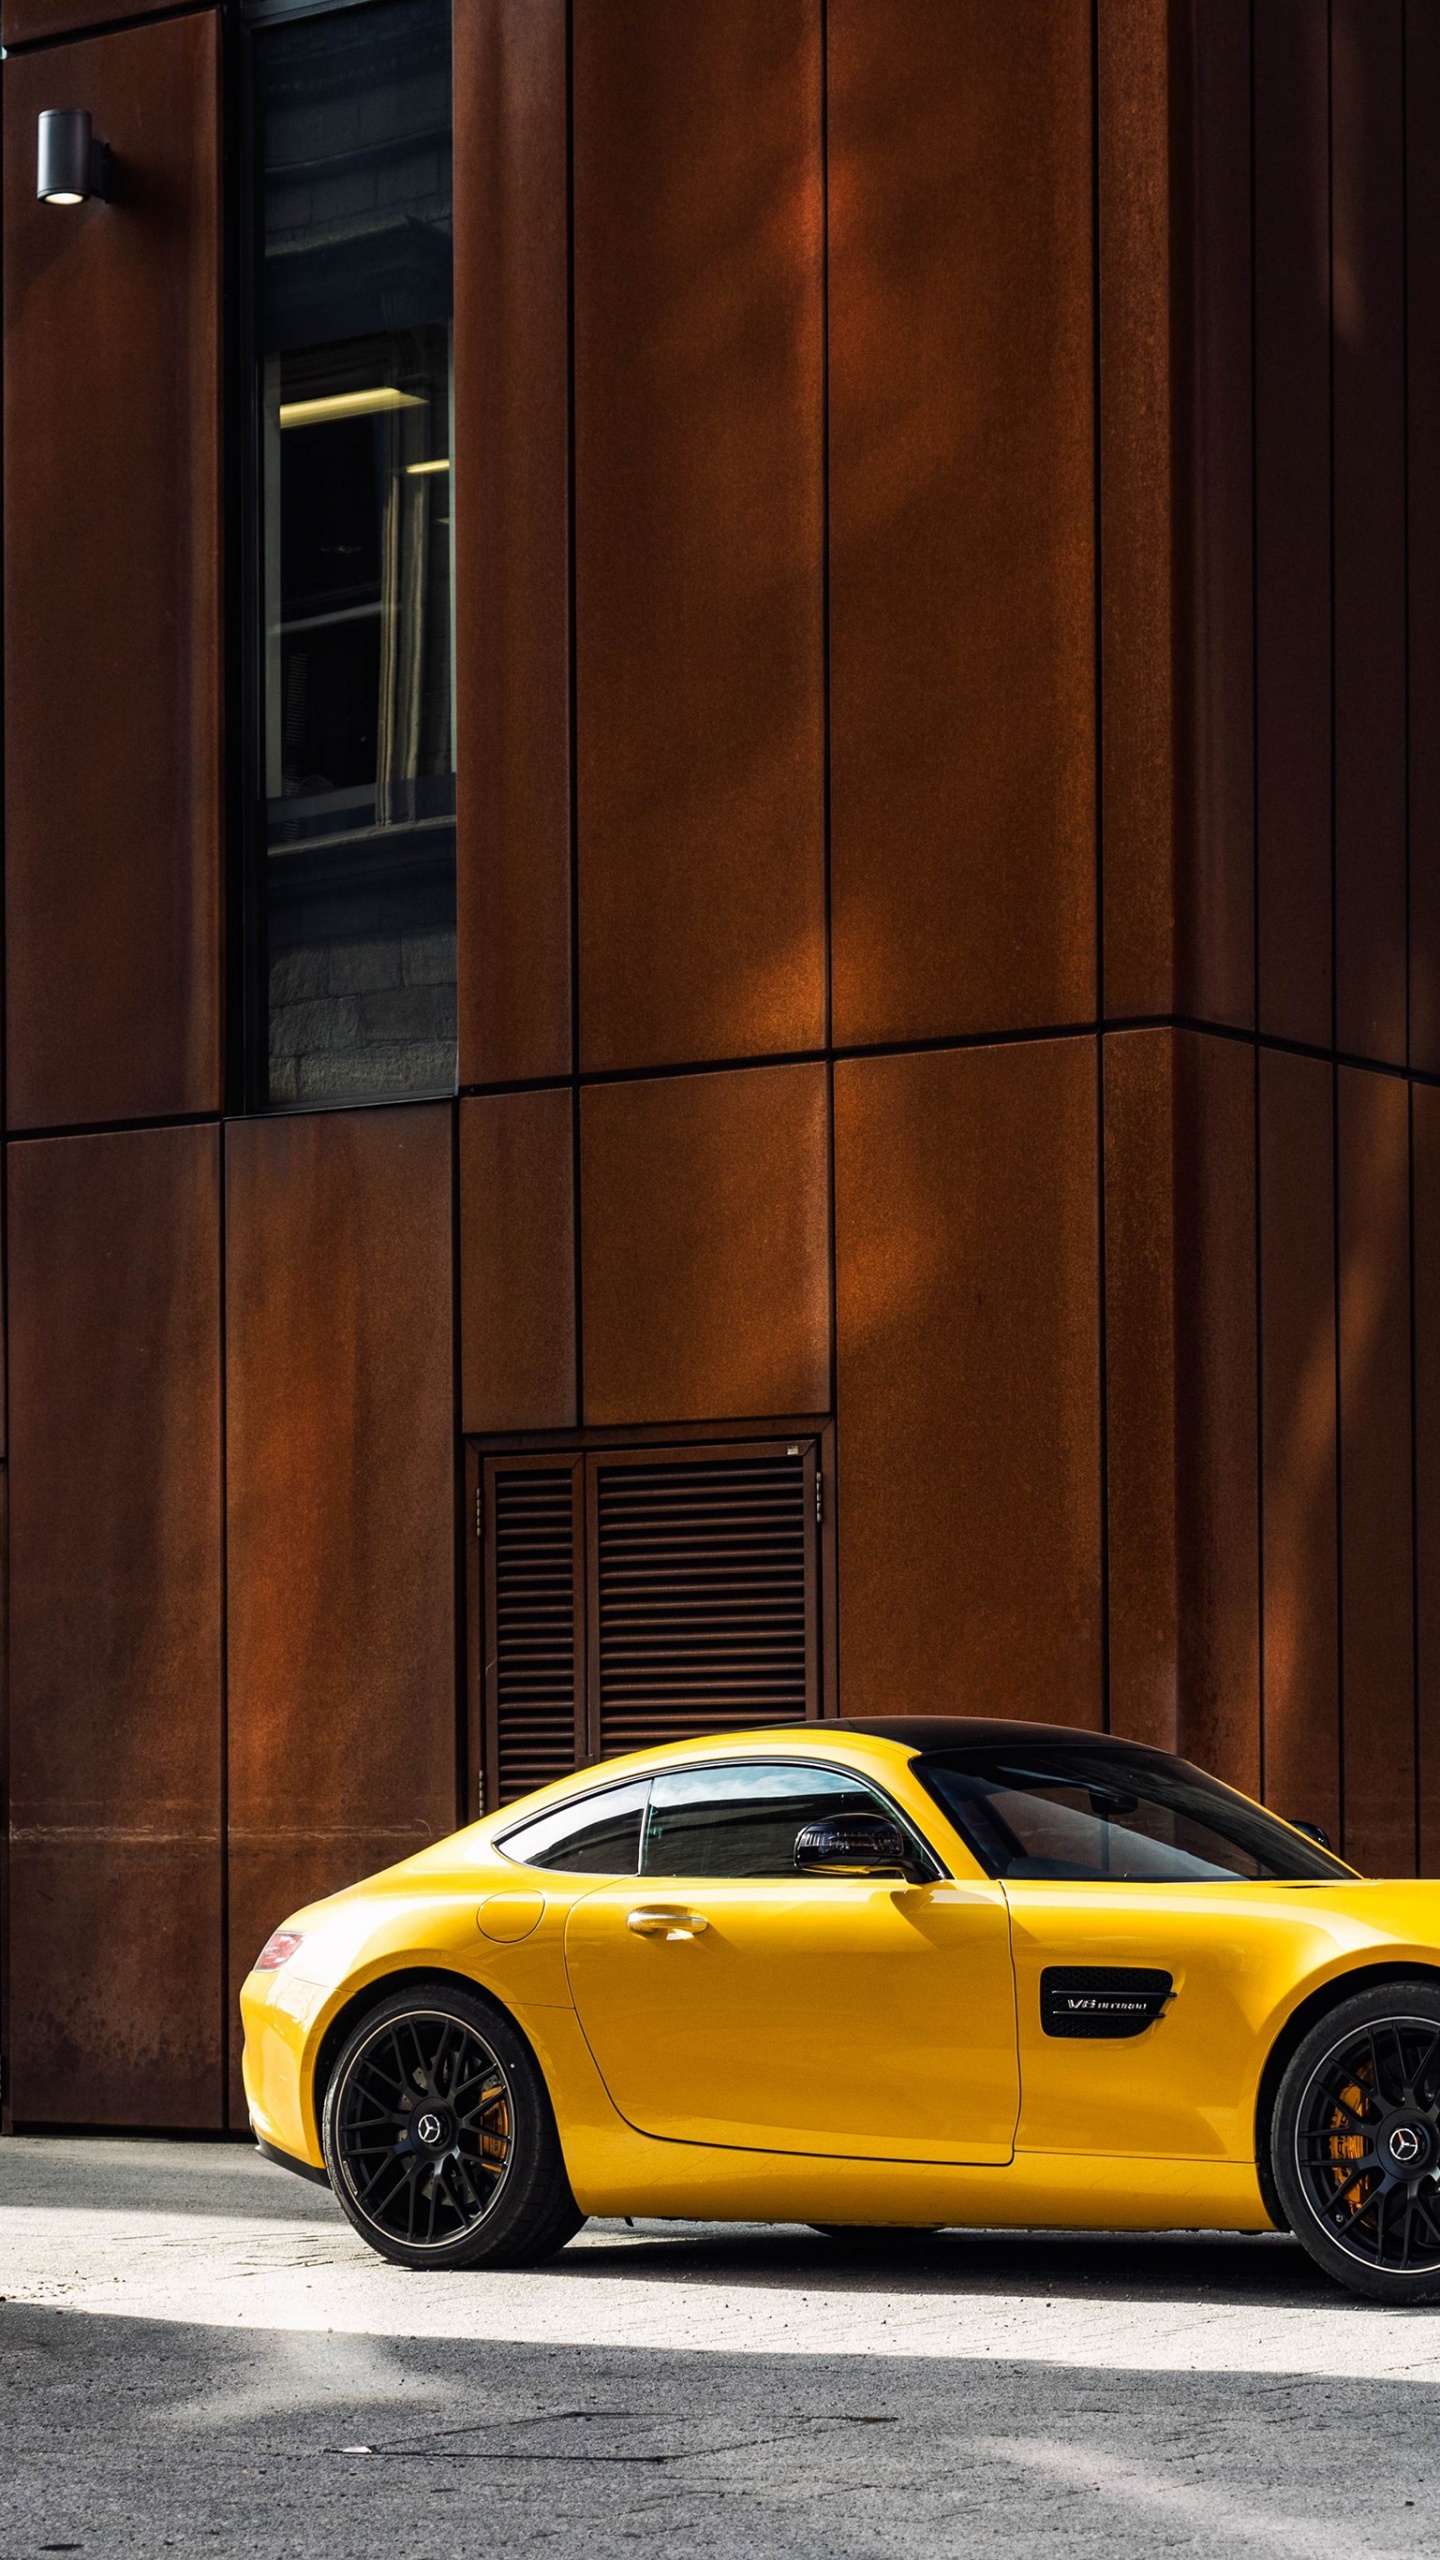 Porsche 911 Amarillo Estacionado Junto al Edificio de Hormigón Marrón Durante el Día. Wallpaper in 1440x2560 Resolution